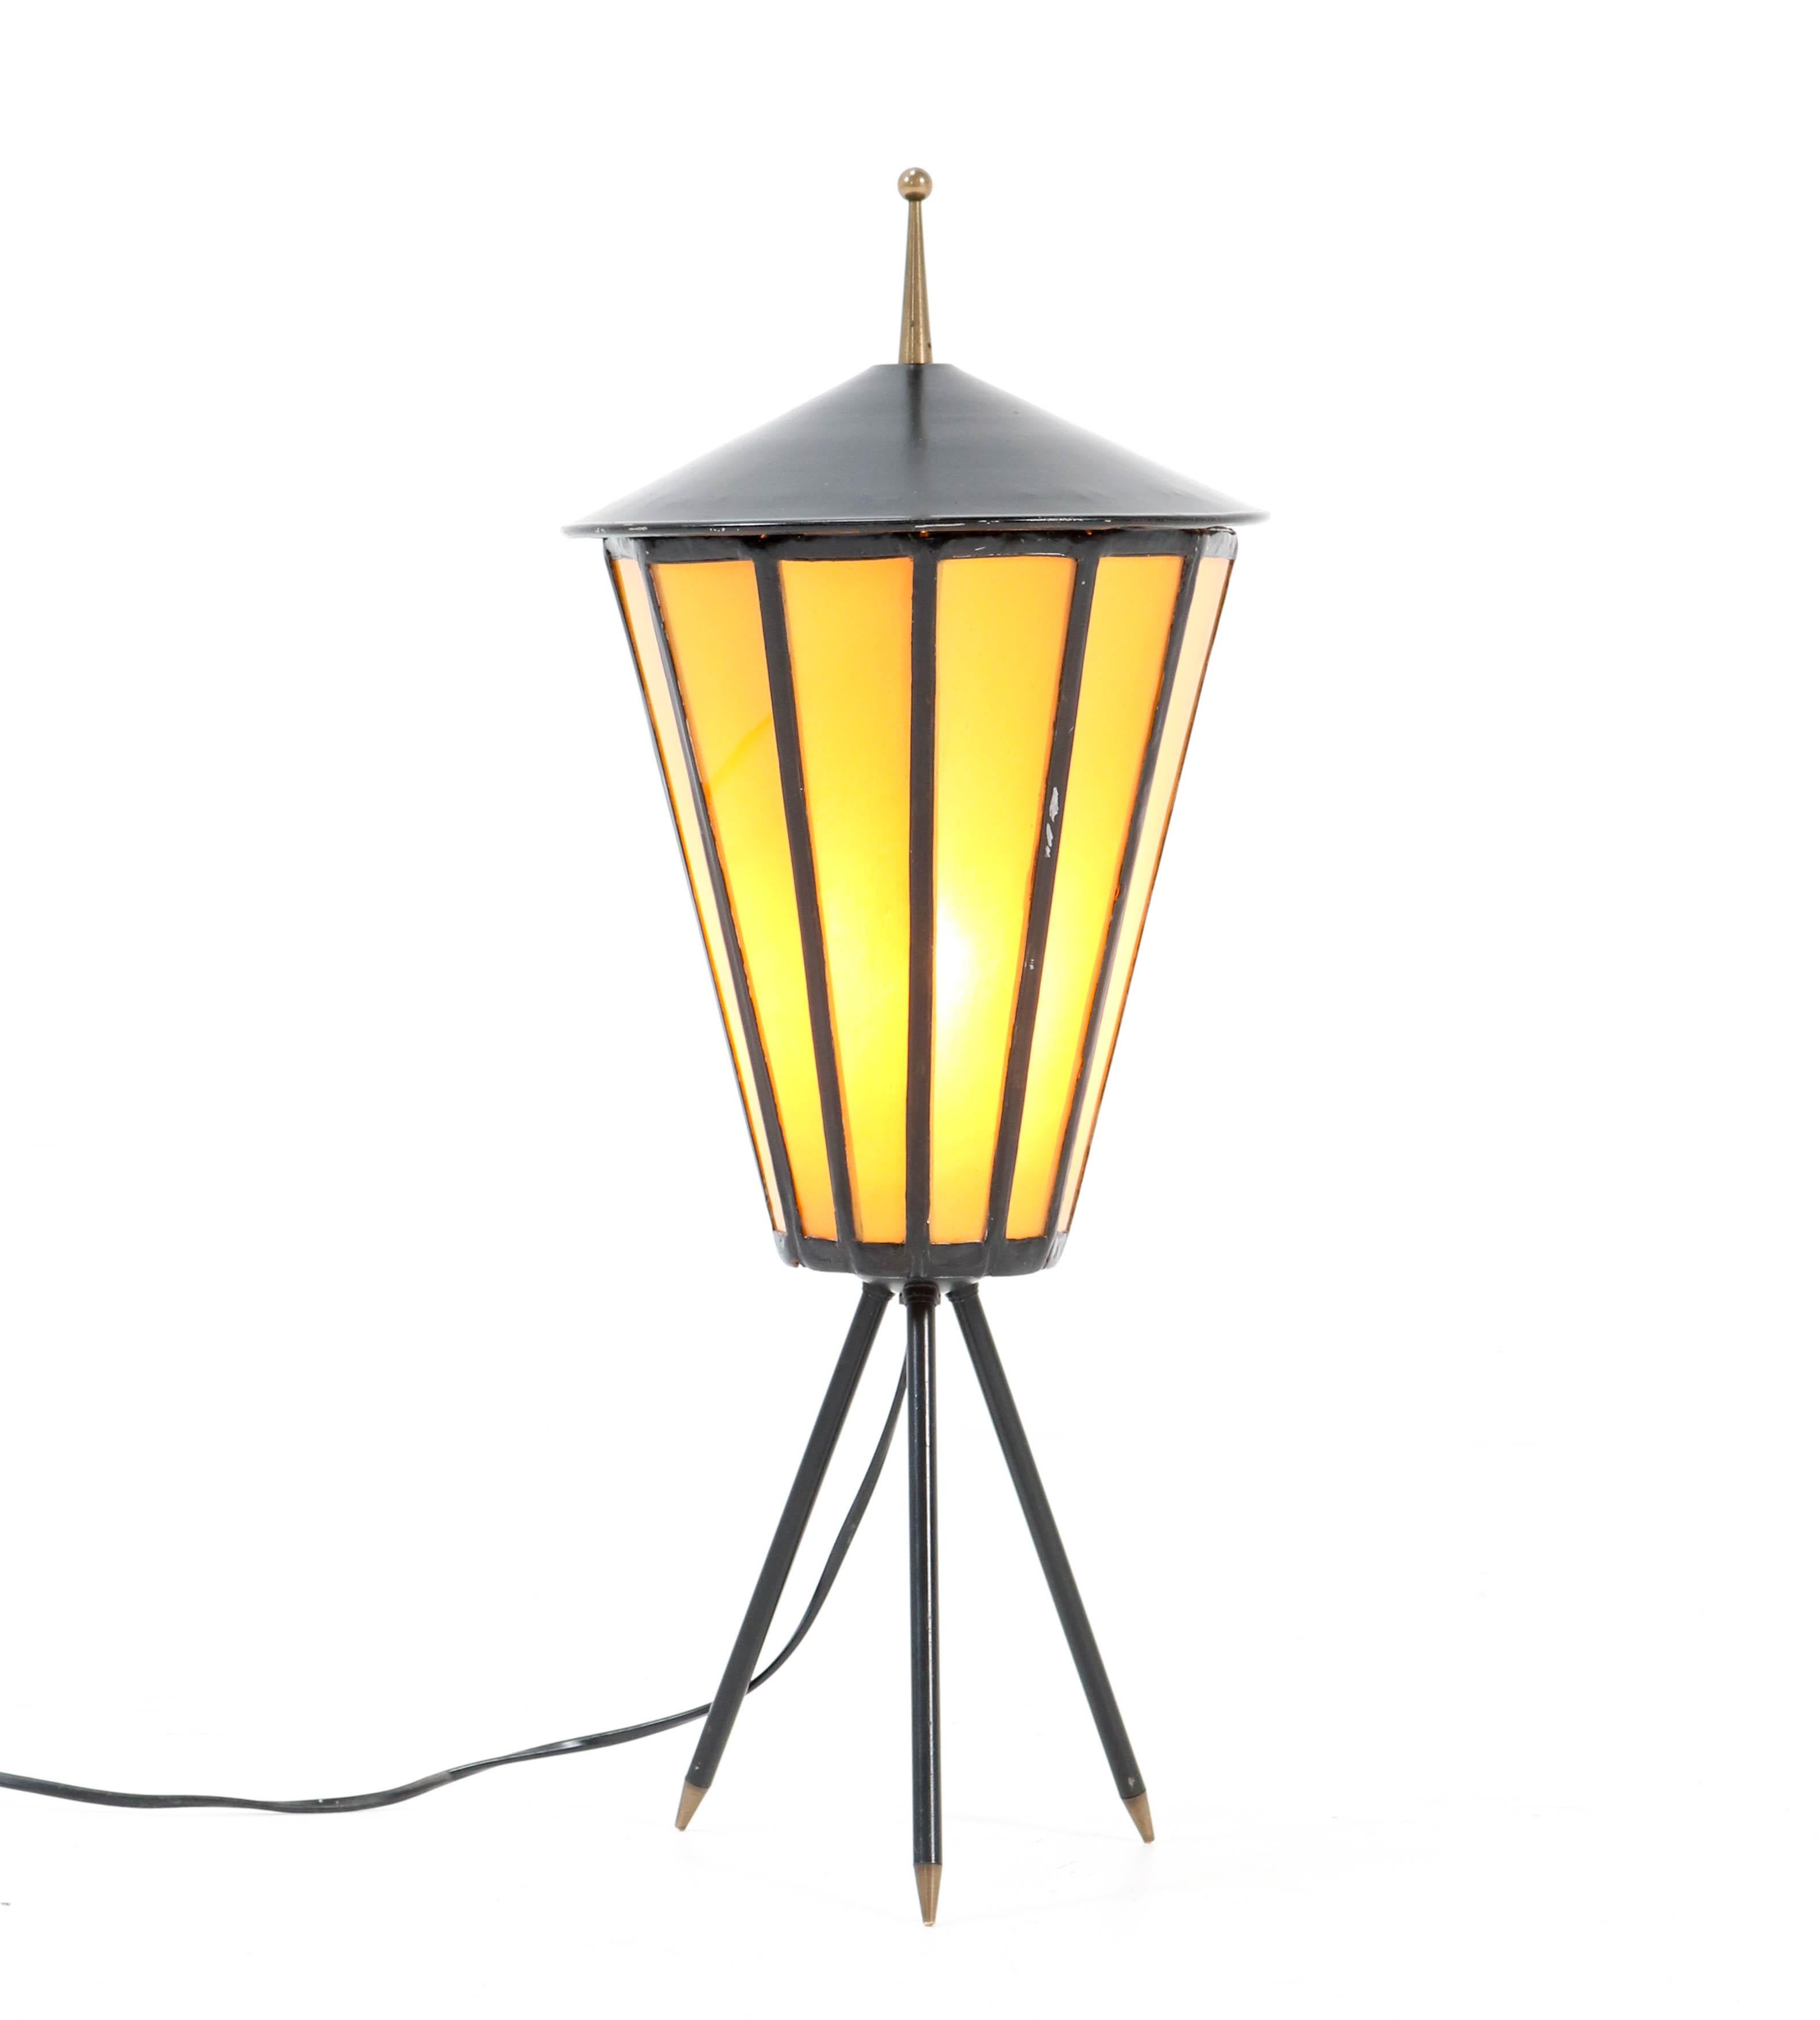 Superbe lampe de table moderne du milieu du siècle.
Un design français saisissant des années 1950.
Base en métal laqué noir sur pieds tripodes.
Verre original de couleur jaune.
Recâblé avec une douille pour ampoule E27.